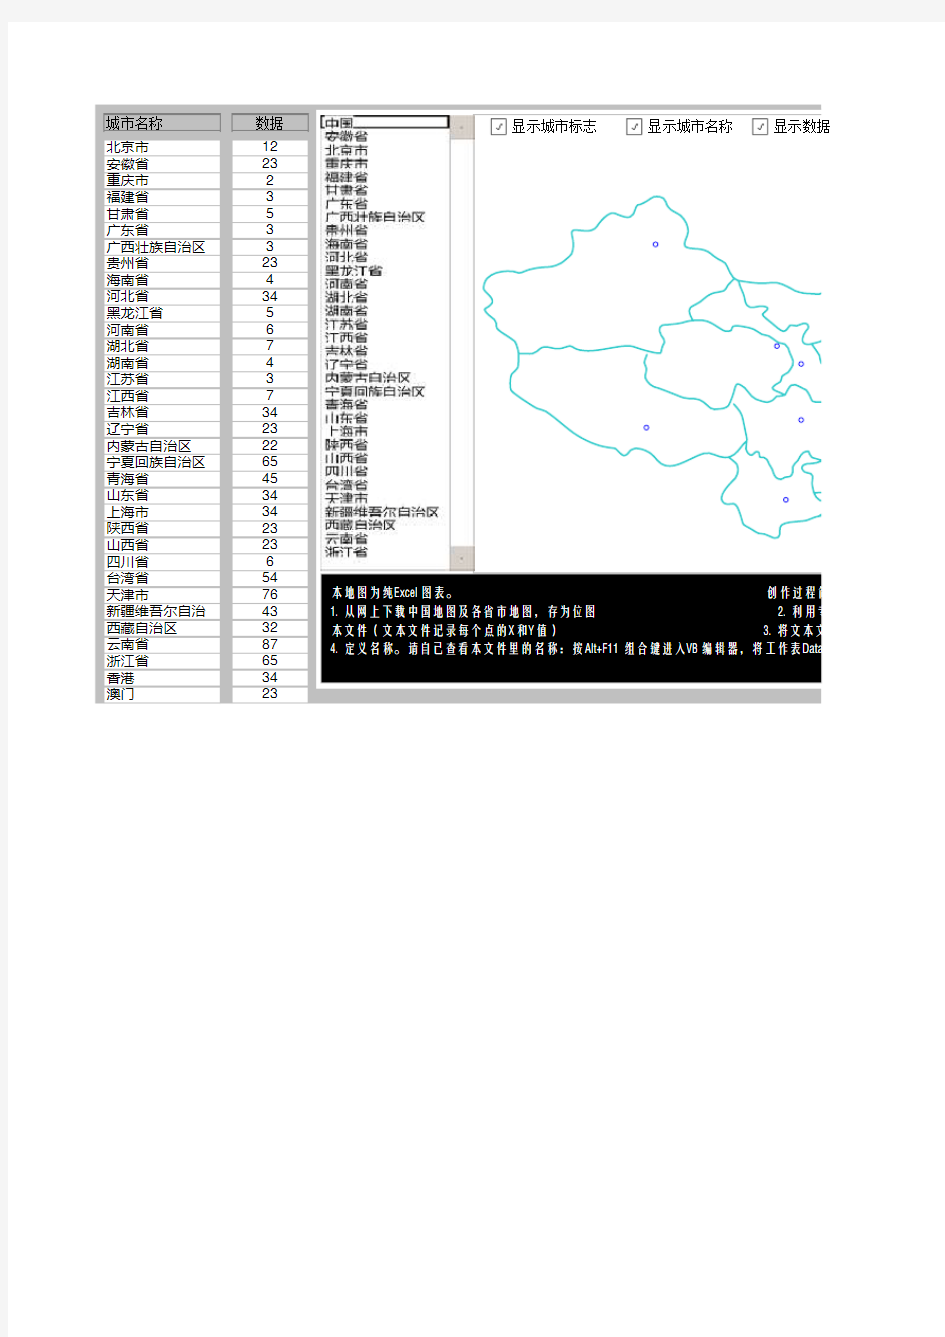 中国地图Excel版(可分省查询显示)